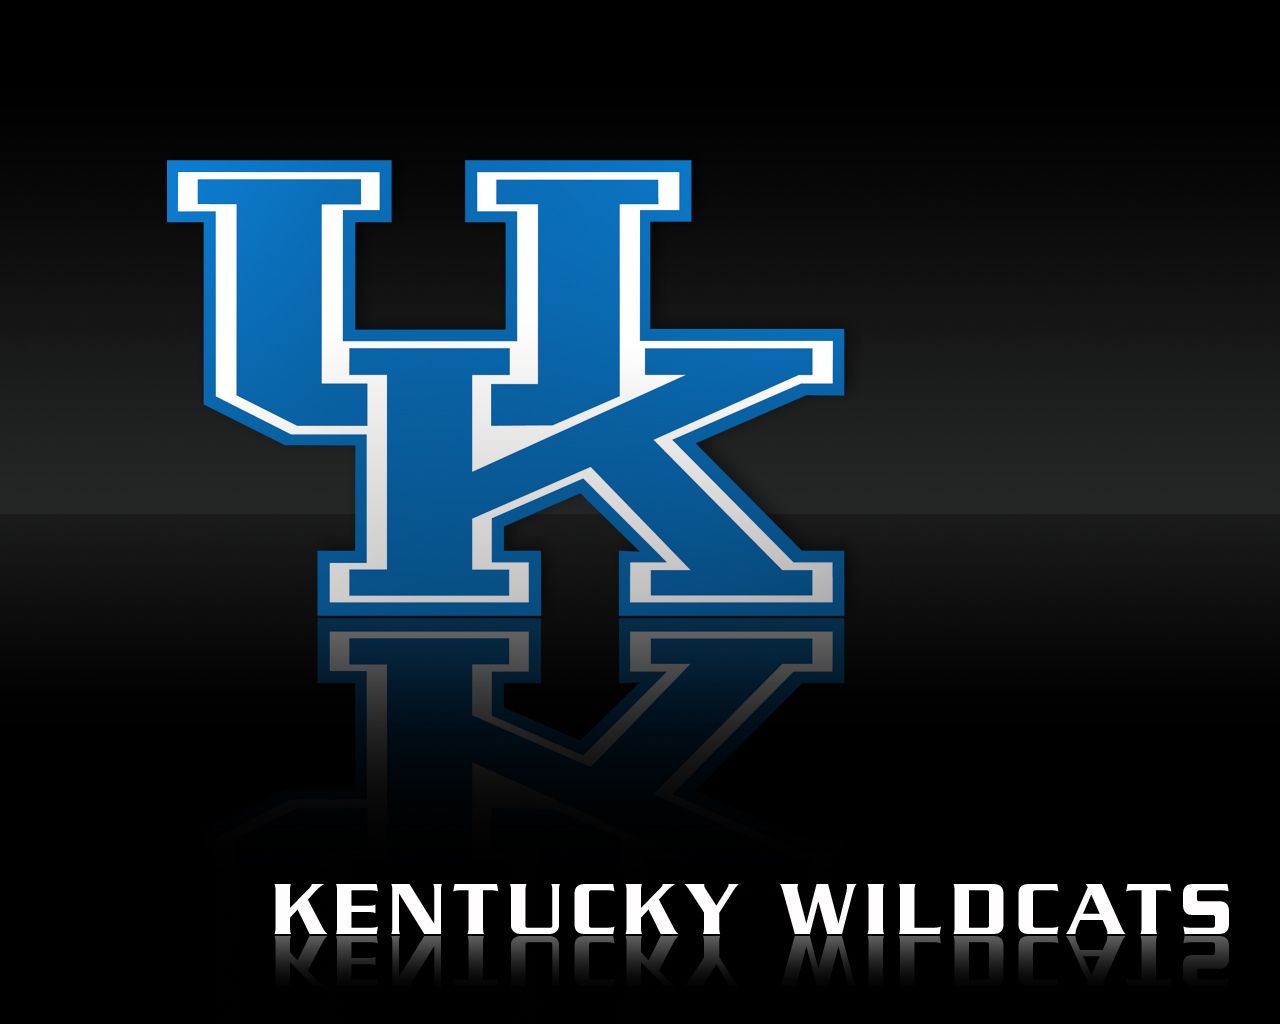 Wildcats logo s on